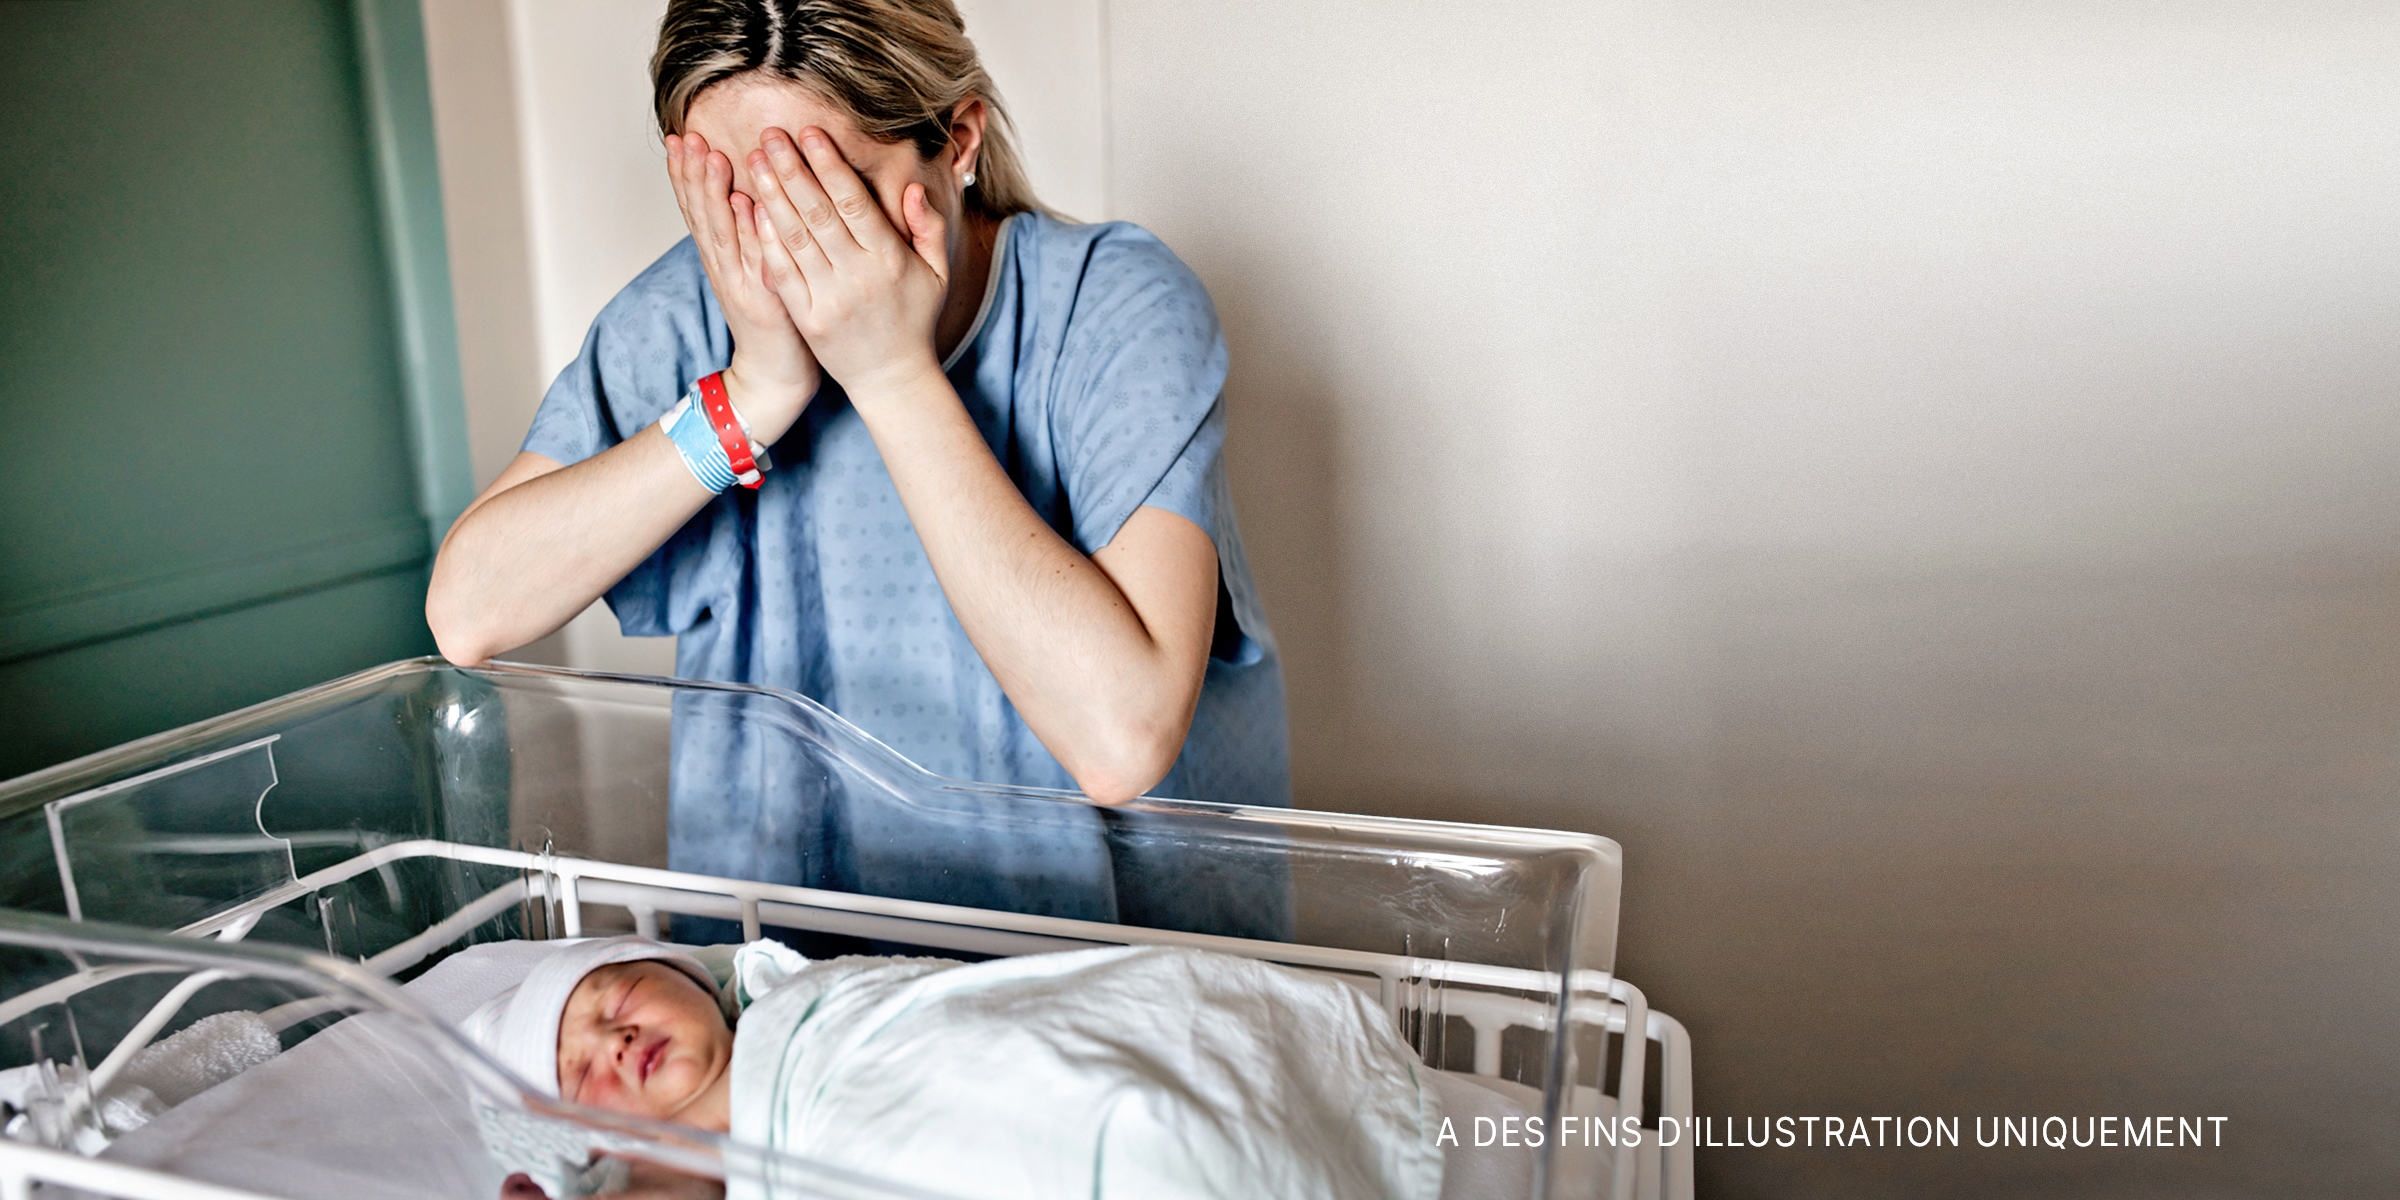 Une mère pleurant près de son nouveau-né placé dans une couveuse | Source : Shutterstock